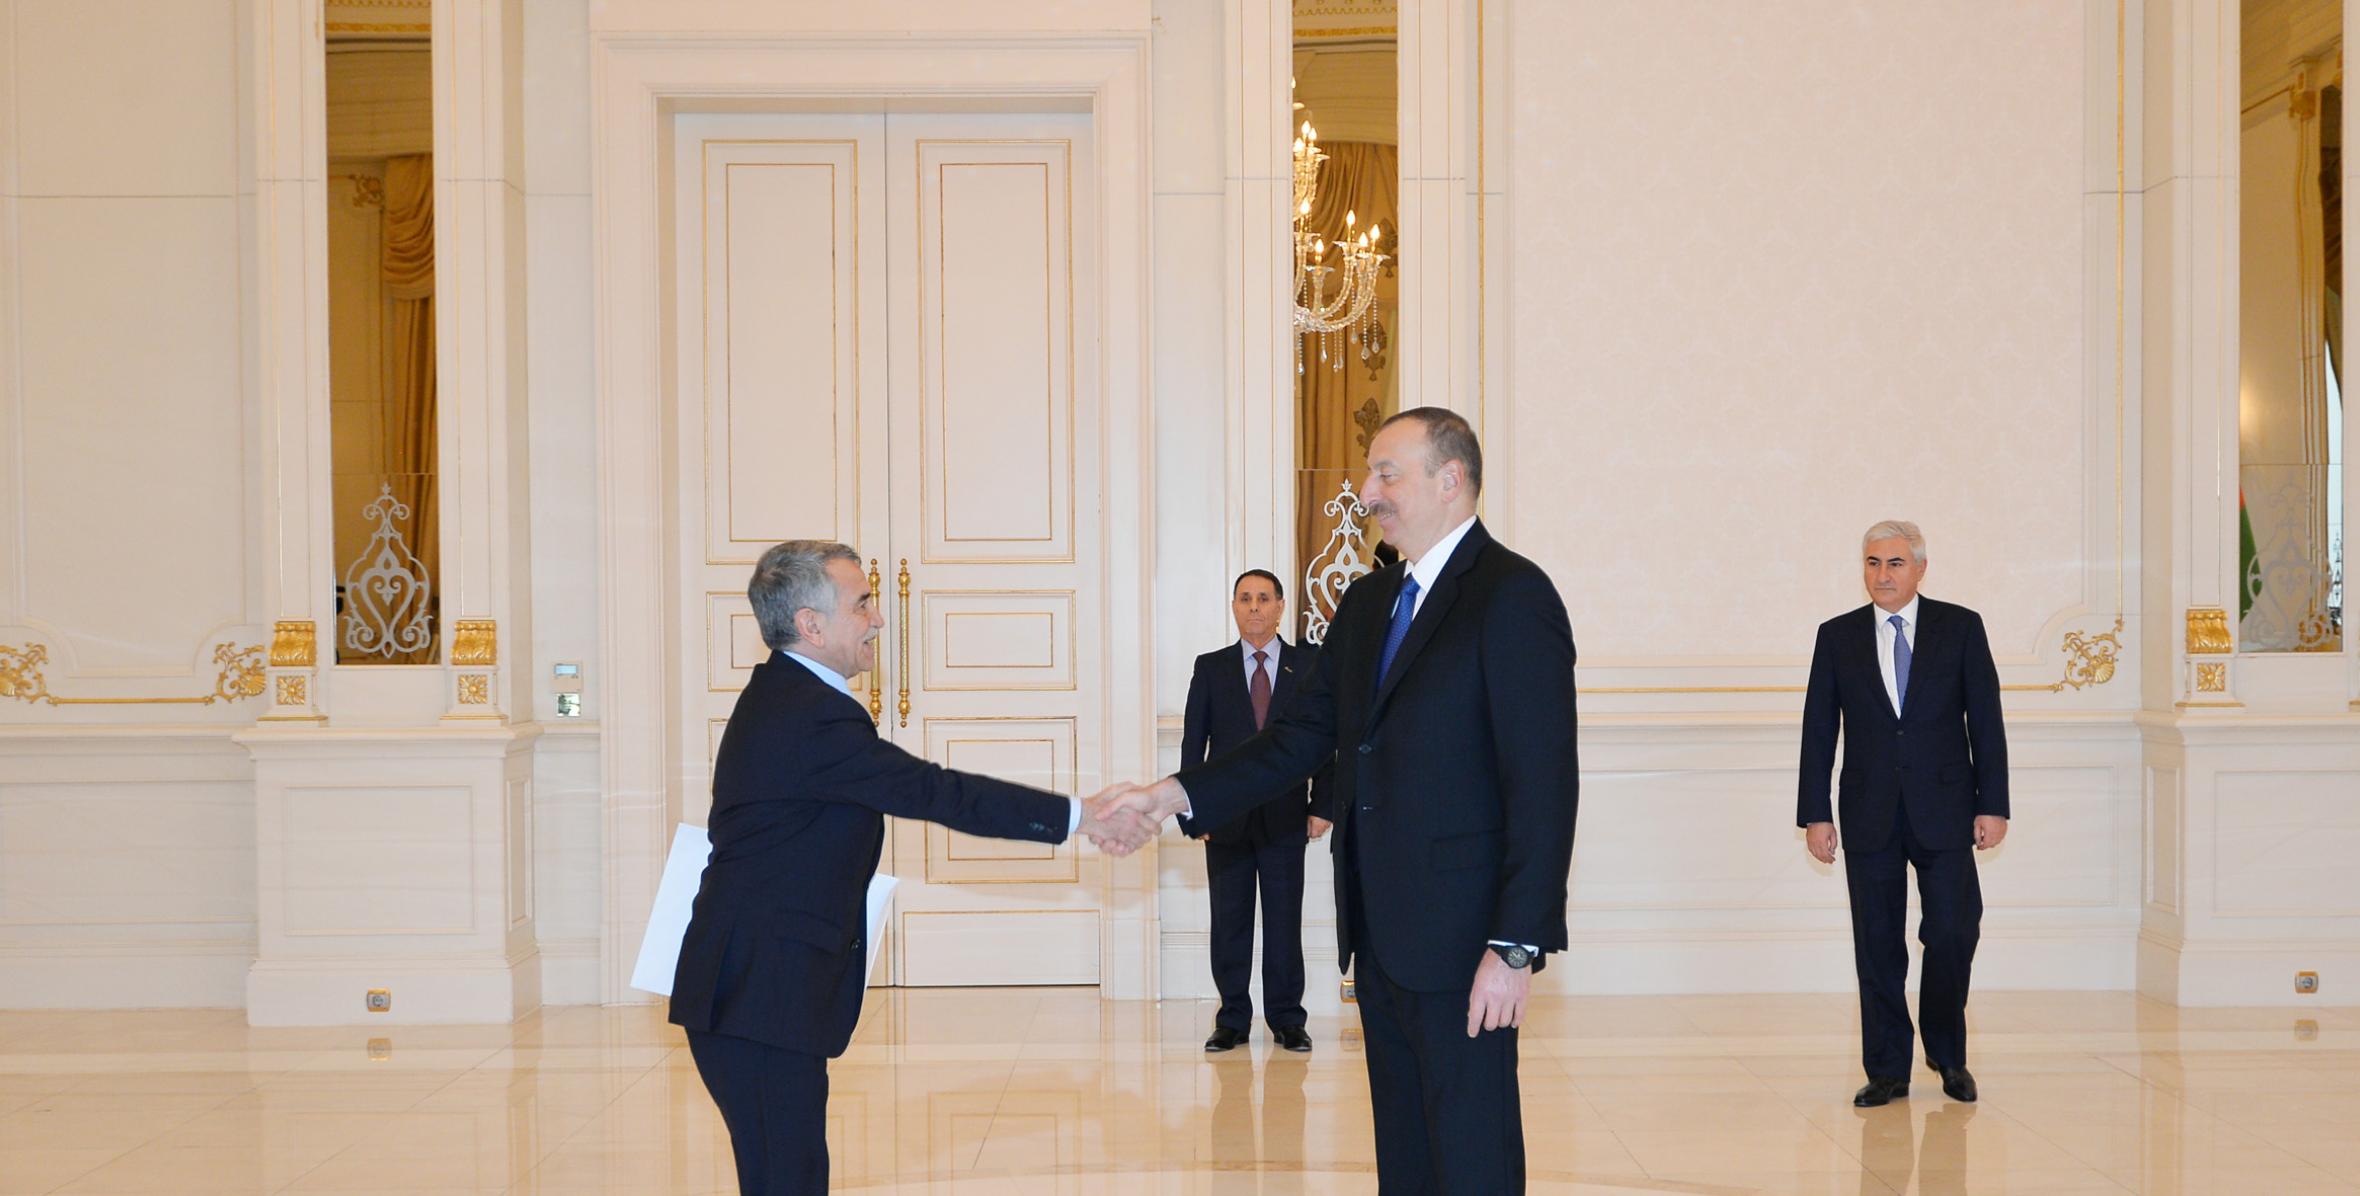 Ильхам Алиев принял верительные грамоты новоназначенного посла Алжира в Азербайджане